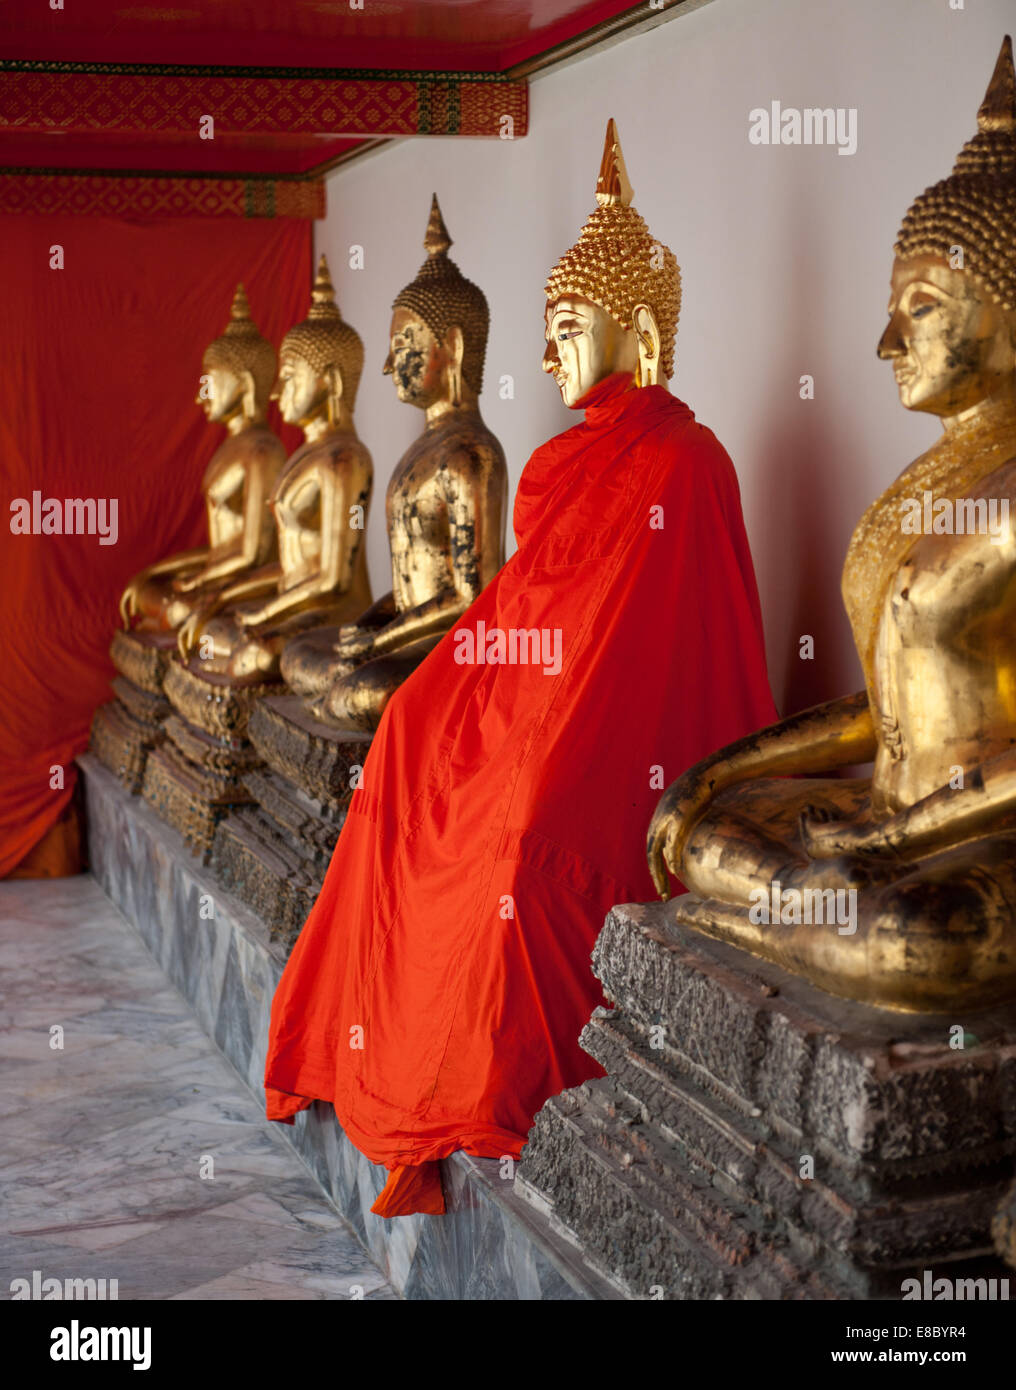 Goldenen Buddha-Statuen in einem buddhistischen Tempel Stockfoto